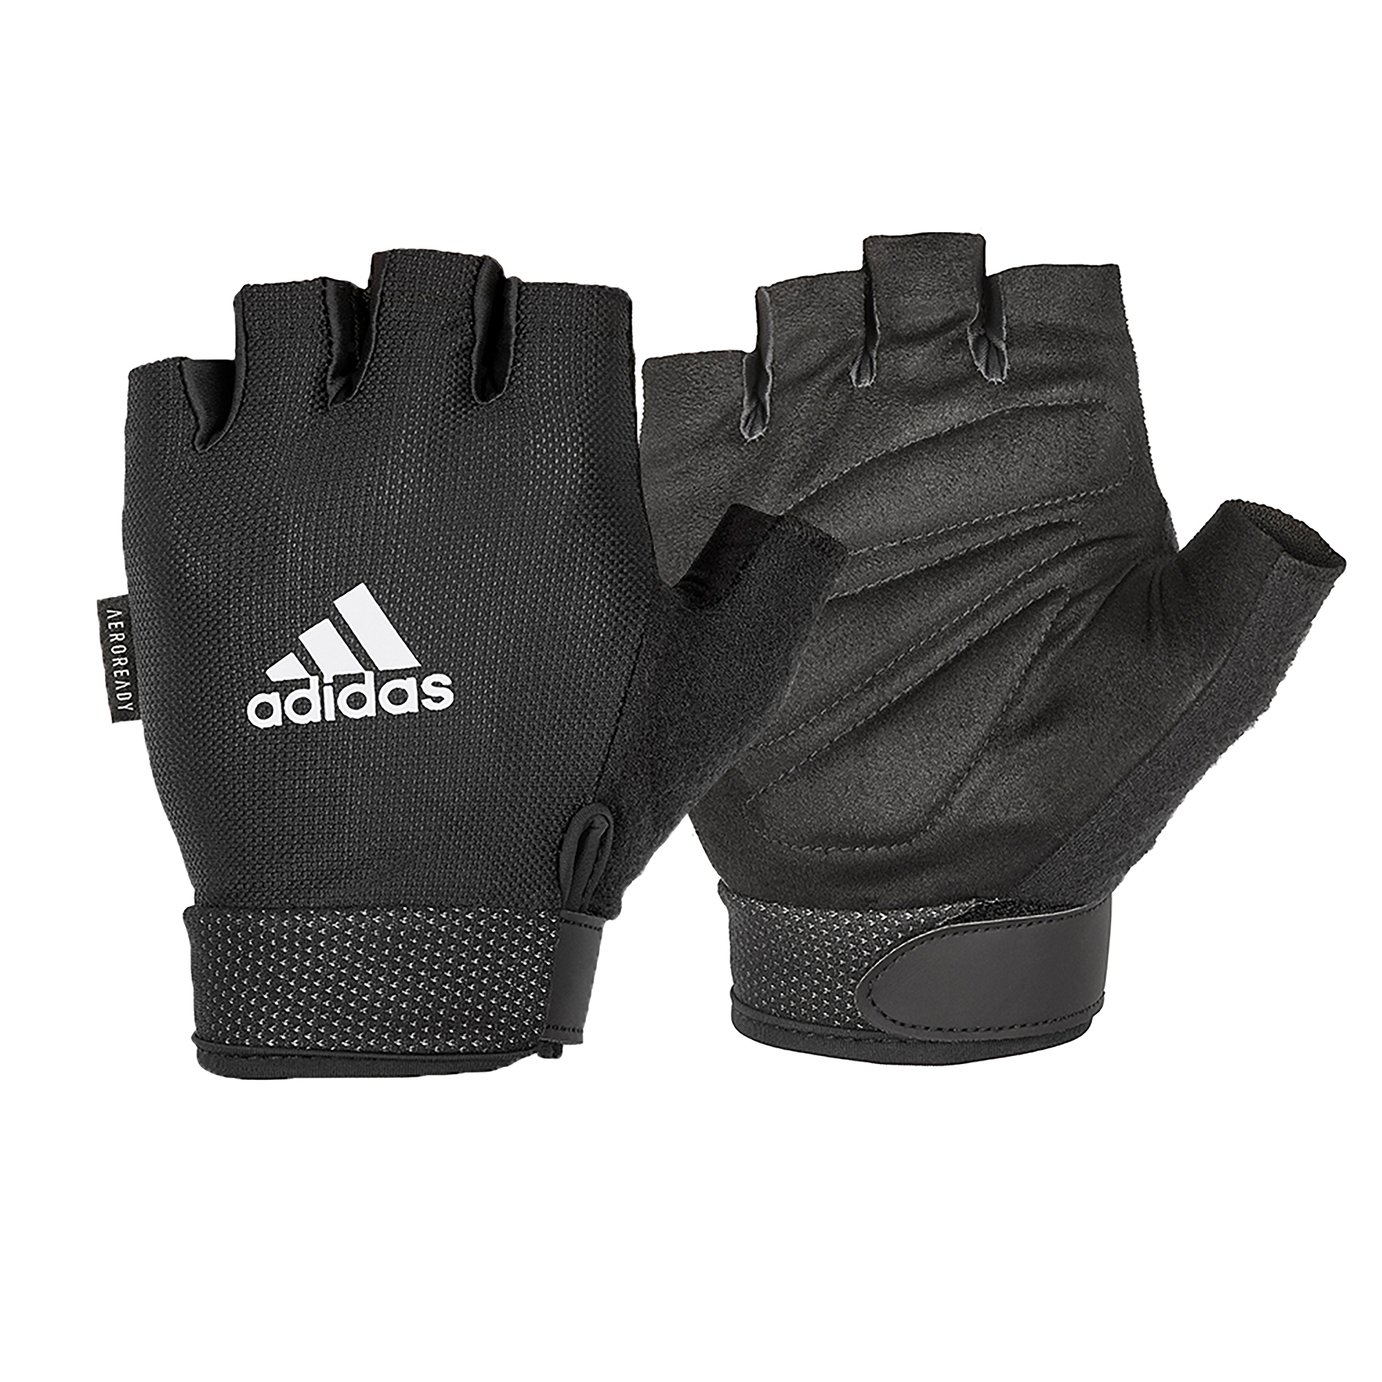 Adidas Essential Gloves – Black L/XL